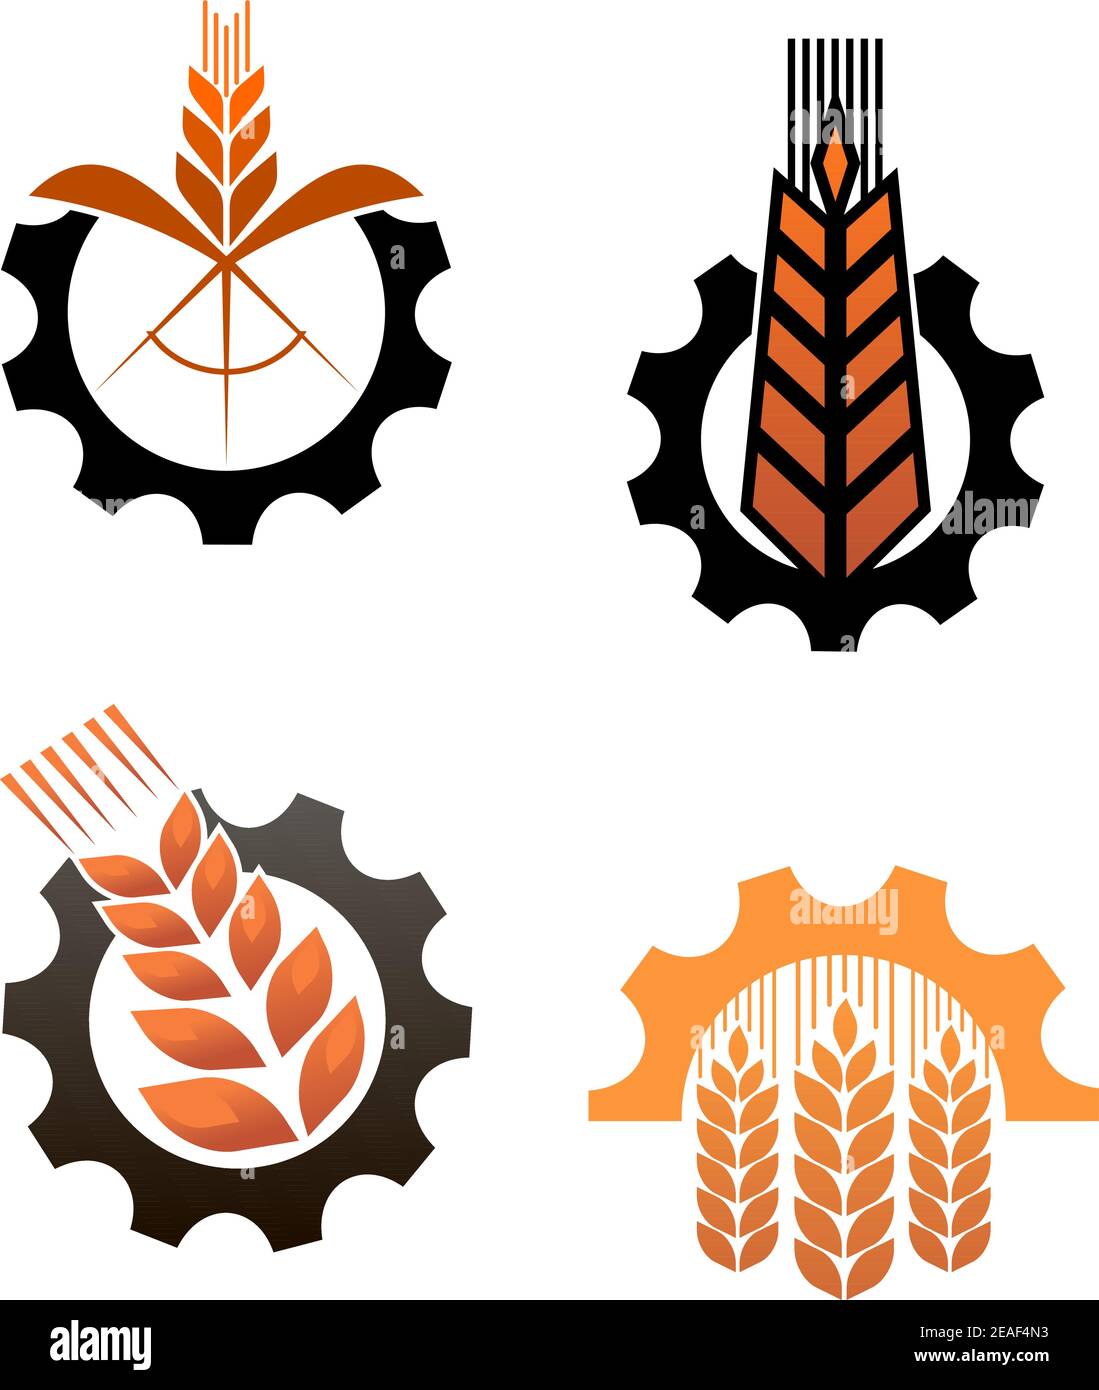 Landwirtschaft Ikonen mit Getreide und Industrieanlagen Stock Vektor